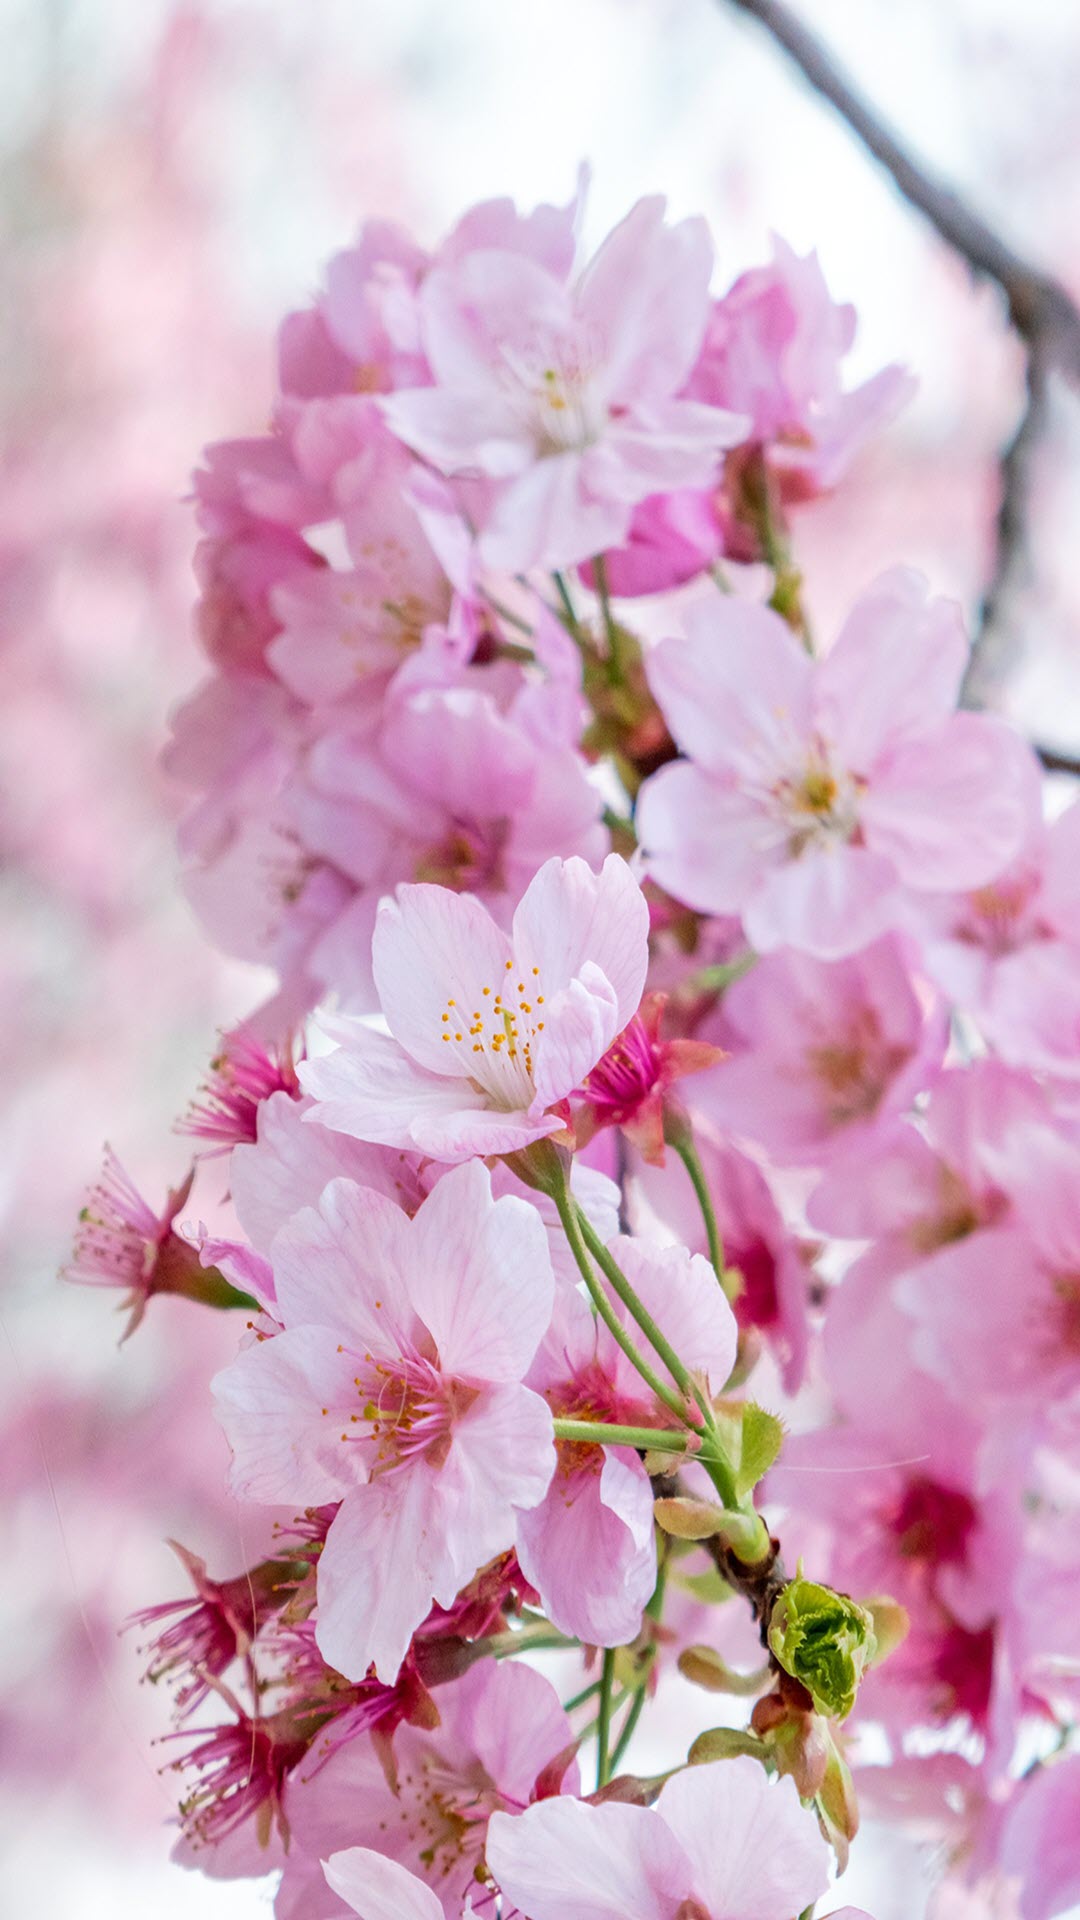 Hoa anh đào: Hãy tưởng tượng một thế giới đầy hoa anh đào, nơi mà mọi thứ đều tươi mới và tuyệt đẹp. Hãy tìm hiểu về những bông hoa sakura này và cảm nhận vẻ đẹp huyền ảo và vượt thời gian mà chúng mang lại.